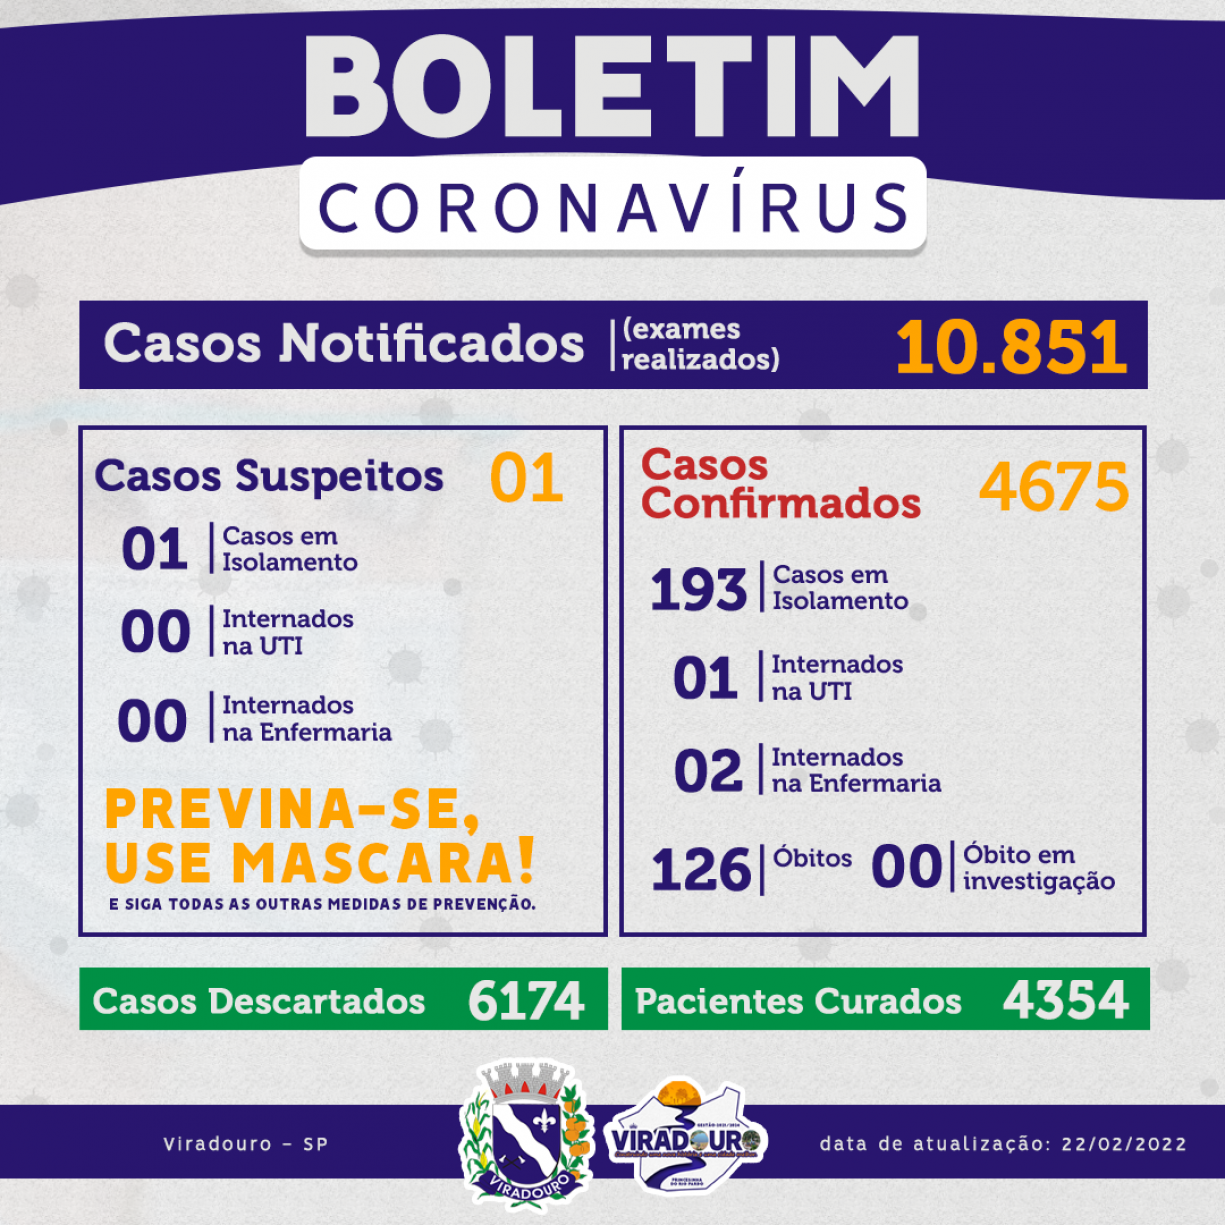 CORONAVÍRUS: BOLETIM EPIDEMIOLÓGICO (ATUALIZAÇÃO 23/02/2022)